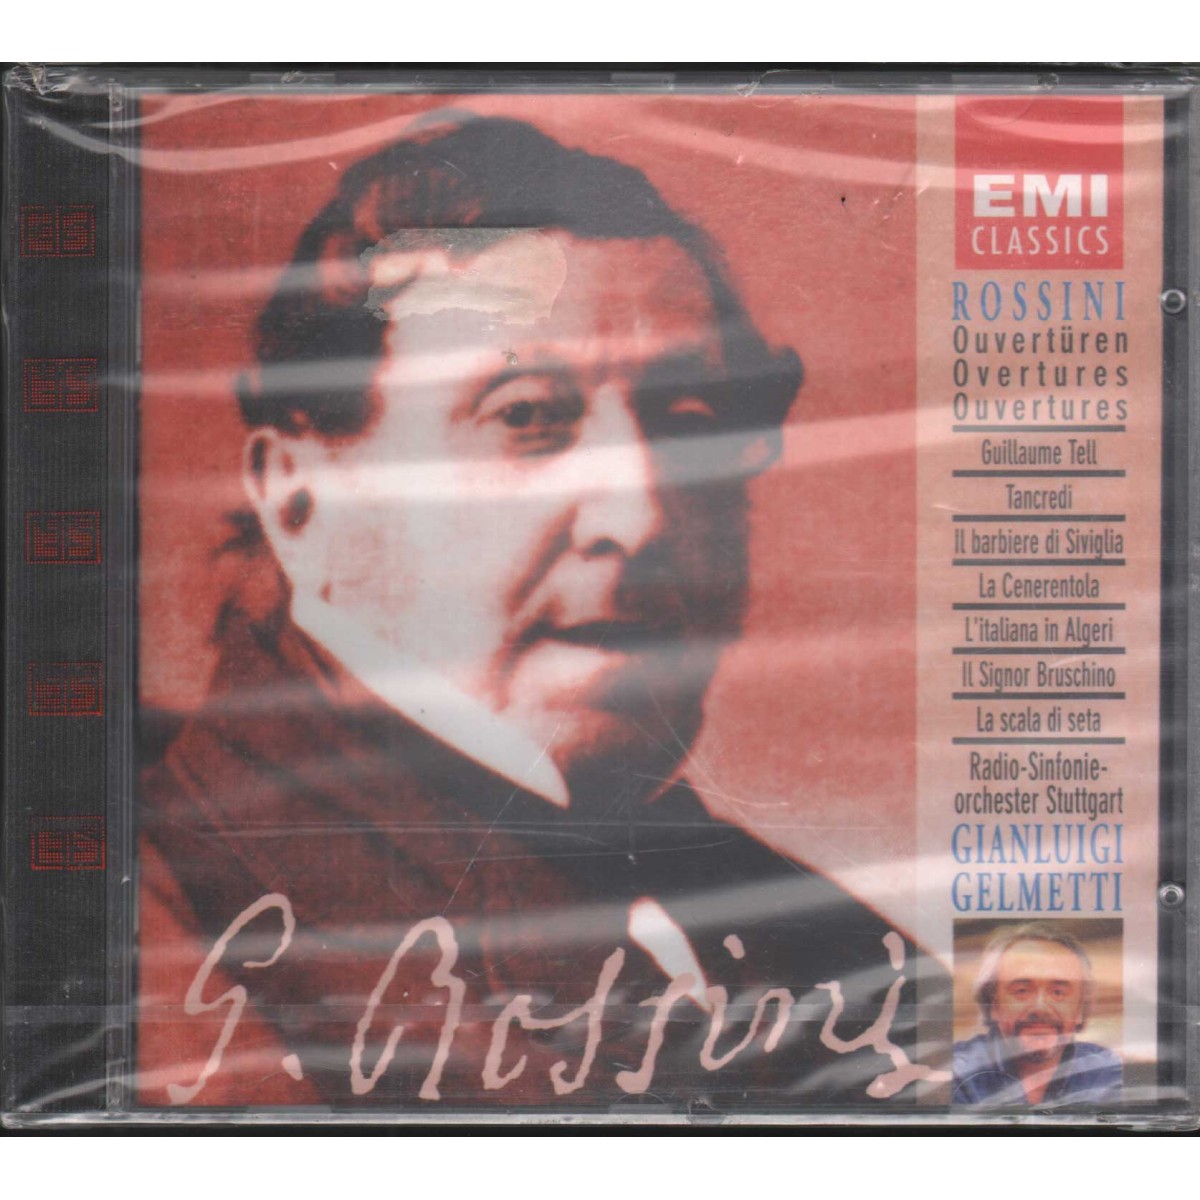 CD　Classics　Sigillato　Ouverturen　EMI　Rossini,　CDC7543962　Gelmetti　–